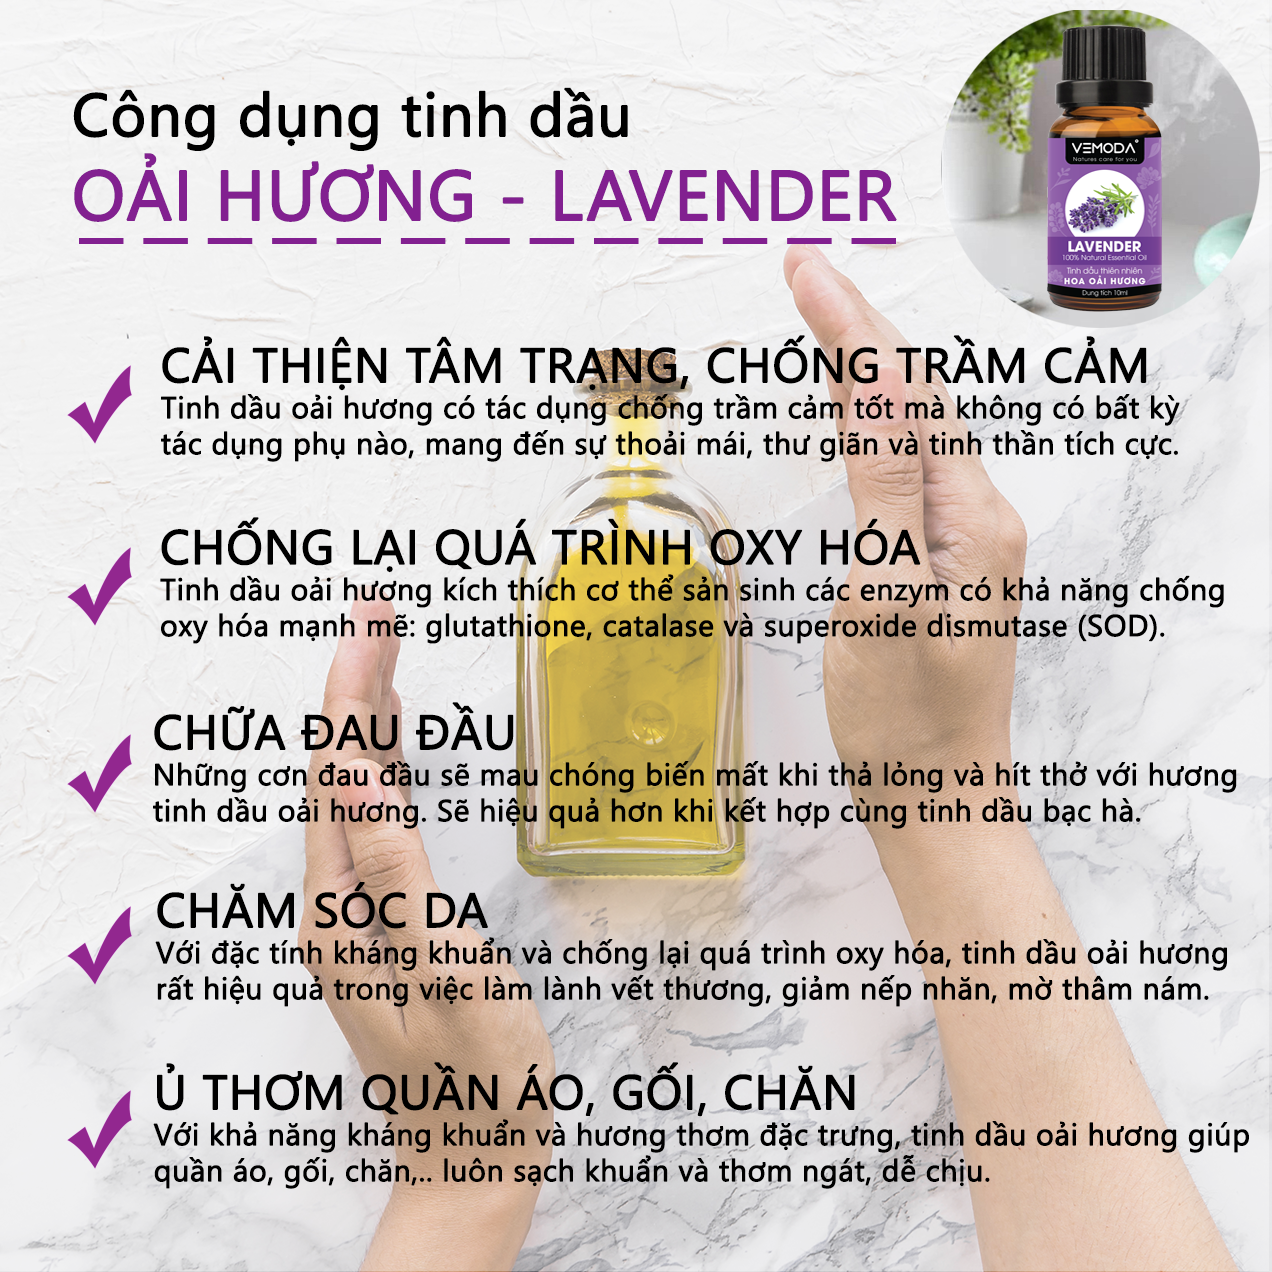 Tinh dầu Oải hương cao cấp. Lavender Essential Oil 10ml. Tinh dầu xông phòng giúp thư giãn, giảm căng thẳng, khử mùi, nâng cao chất lượng giấc ngủ. Tinh dầu thơm phòng cao cấp Vemoda